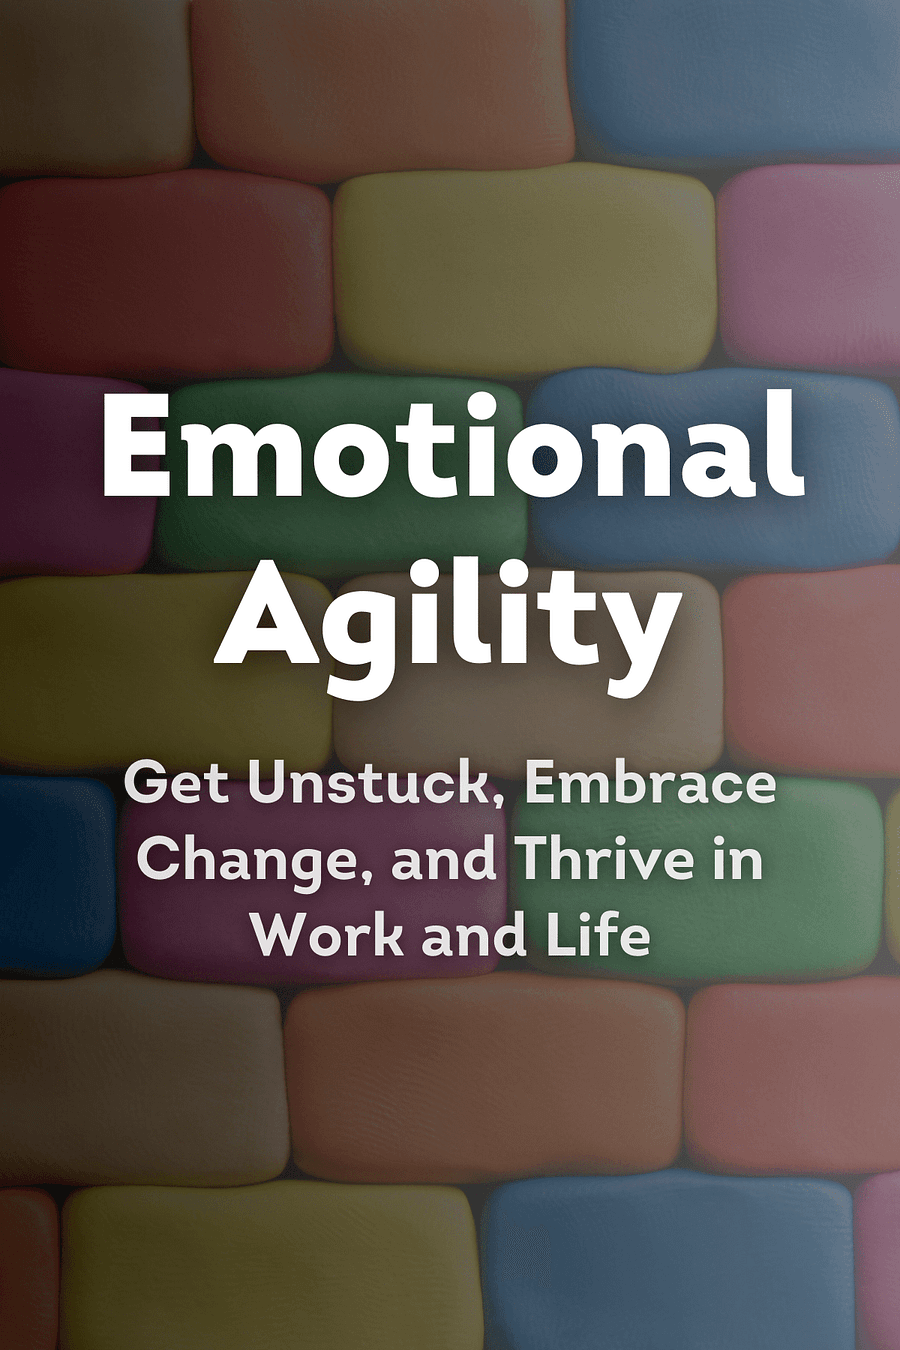 Emotional Agility by Susan David - Book Summary